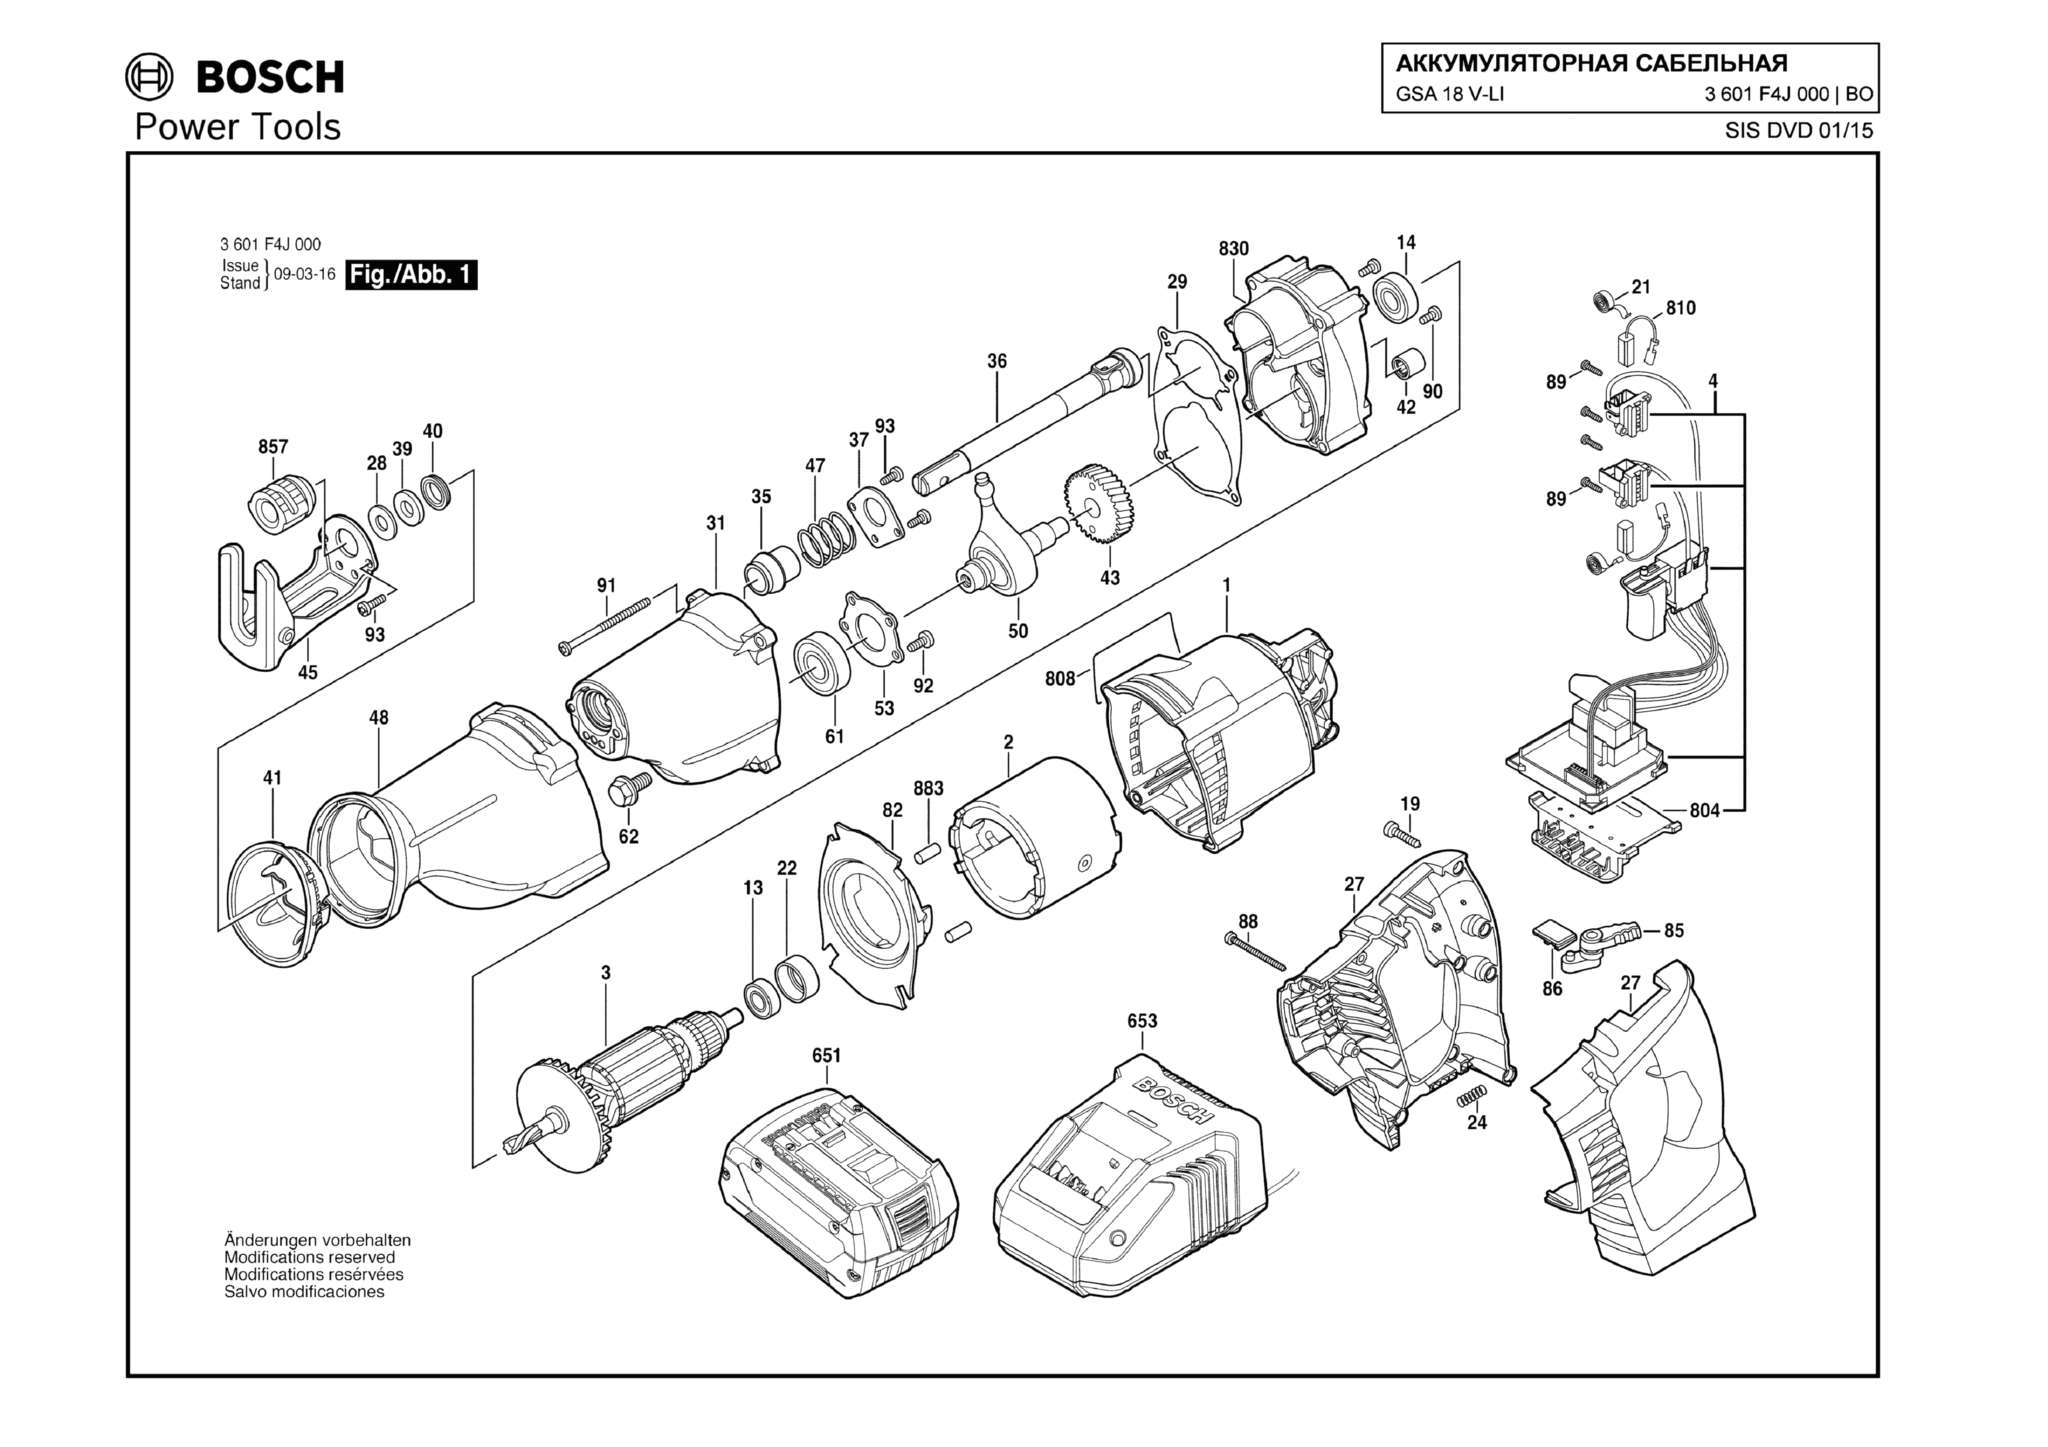 Запчасти, схема и деталировка Bosch GSA 18 V-LI (ТИП 3601F4J000)